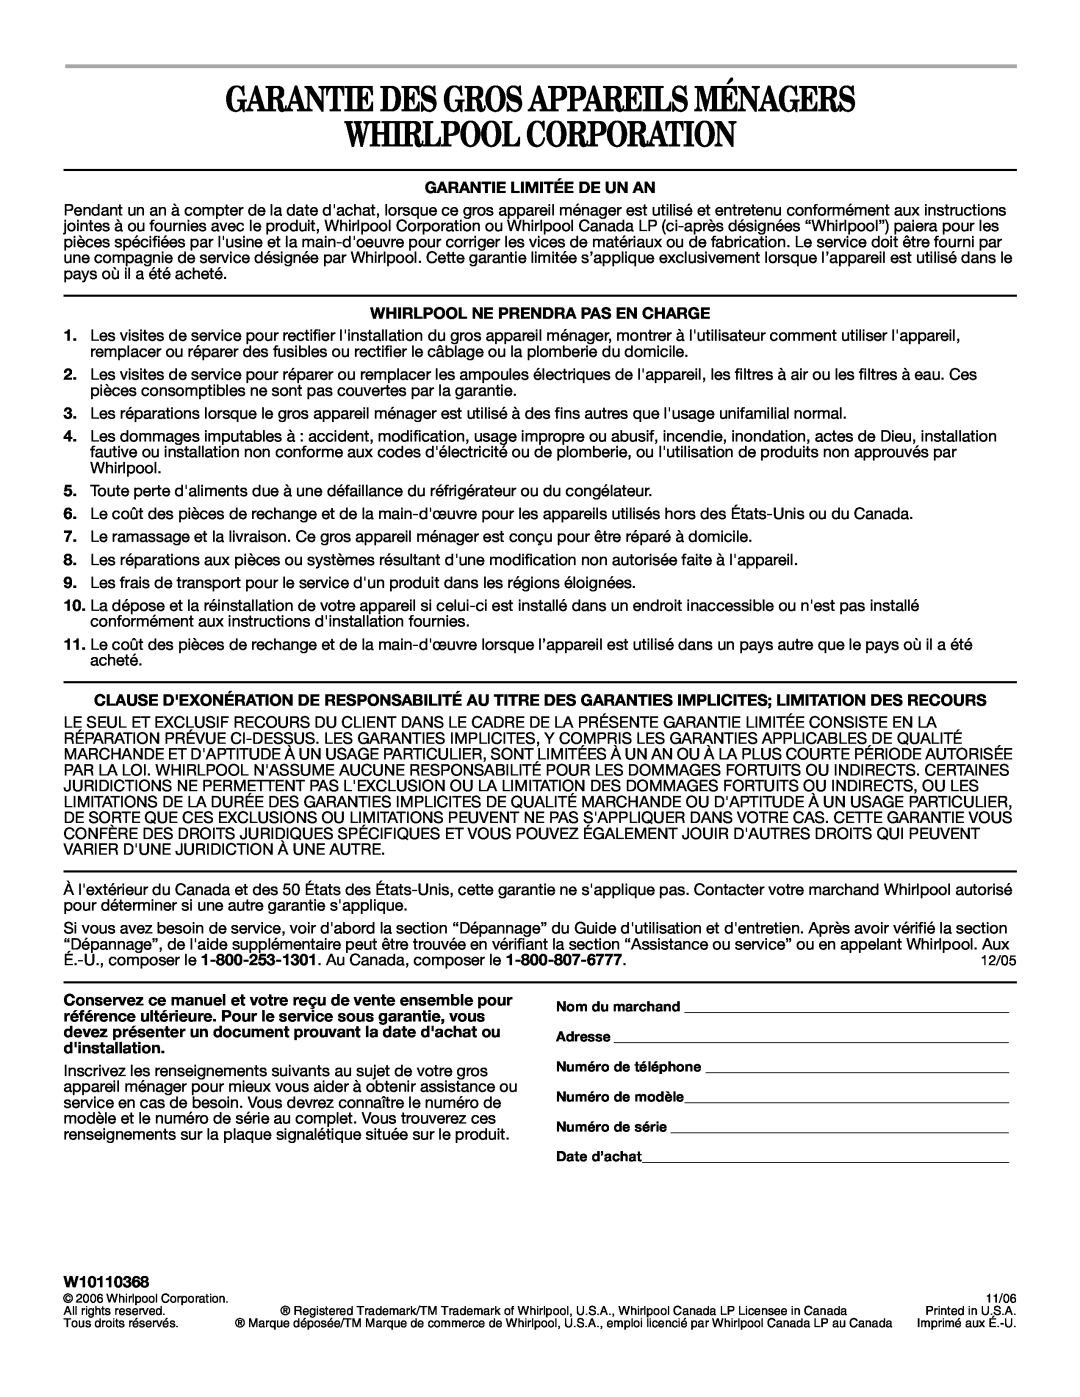 Whirlpool W10110368 manual Garantie Des Gros Appareils Ménagers Whirlpool Corporation, Garantie Limitée De Un An 